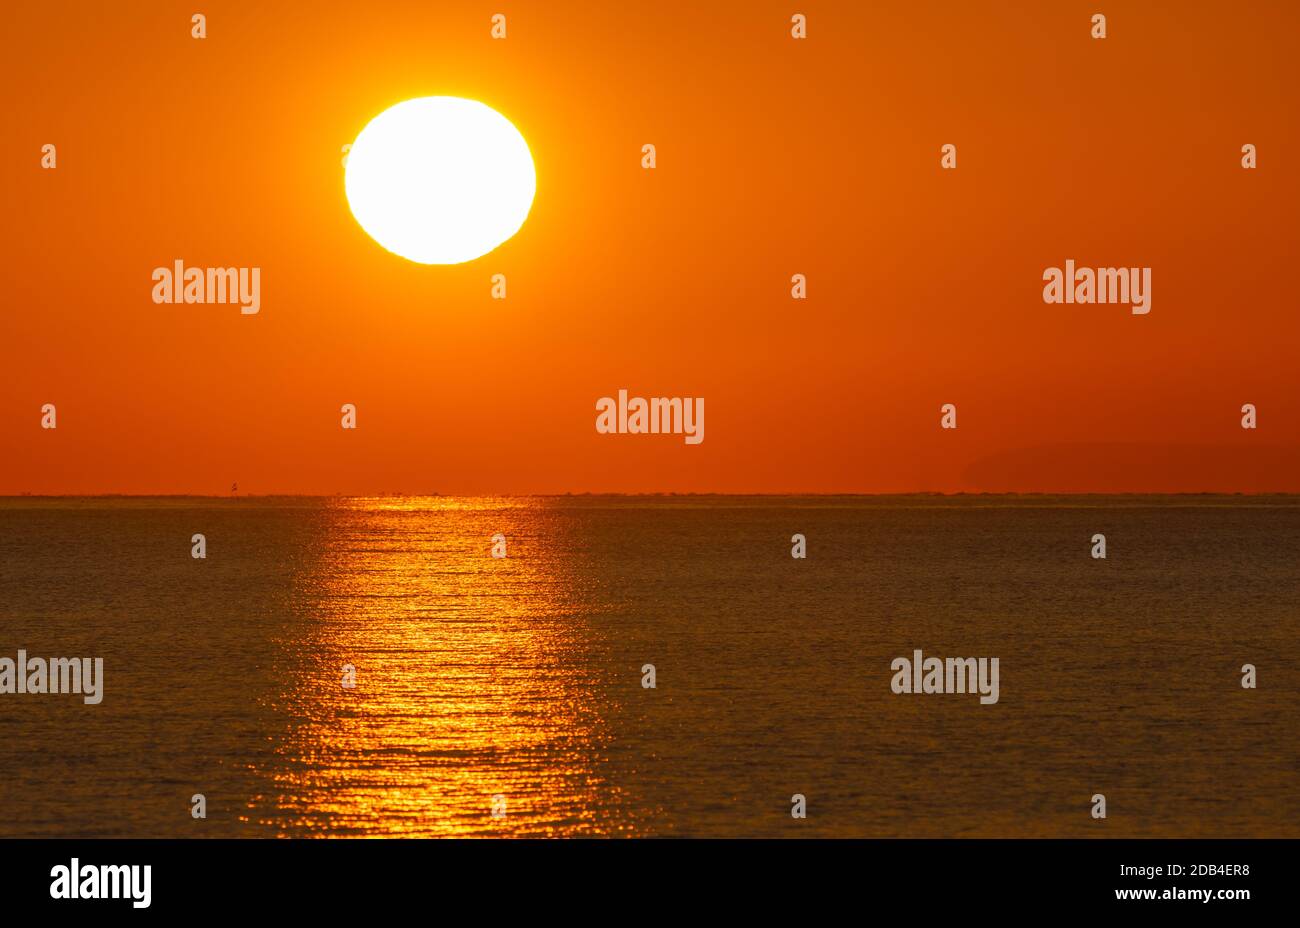 Landschaftsansicht des niedrigen Sonnenuntergangs, zeigt Sonnenuntergang über dem Meer mit einer klaren Reflexion im Wasser. Stockfoto